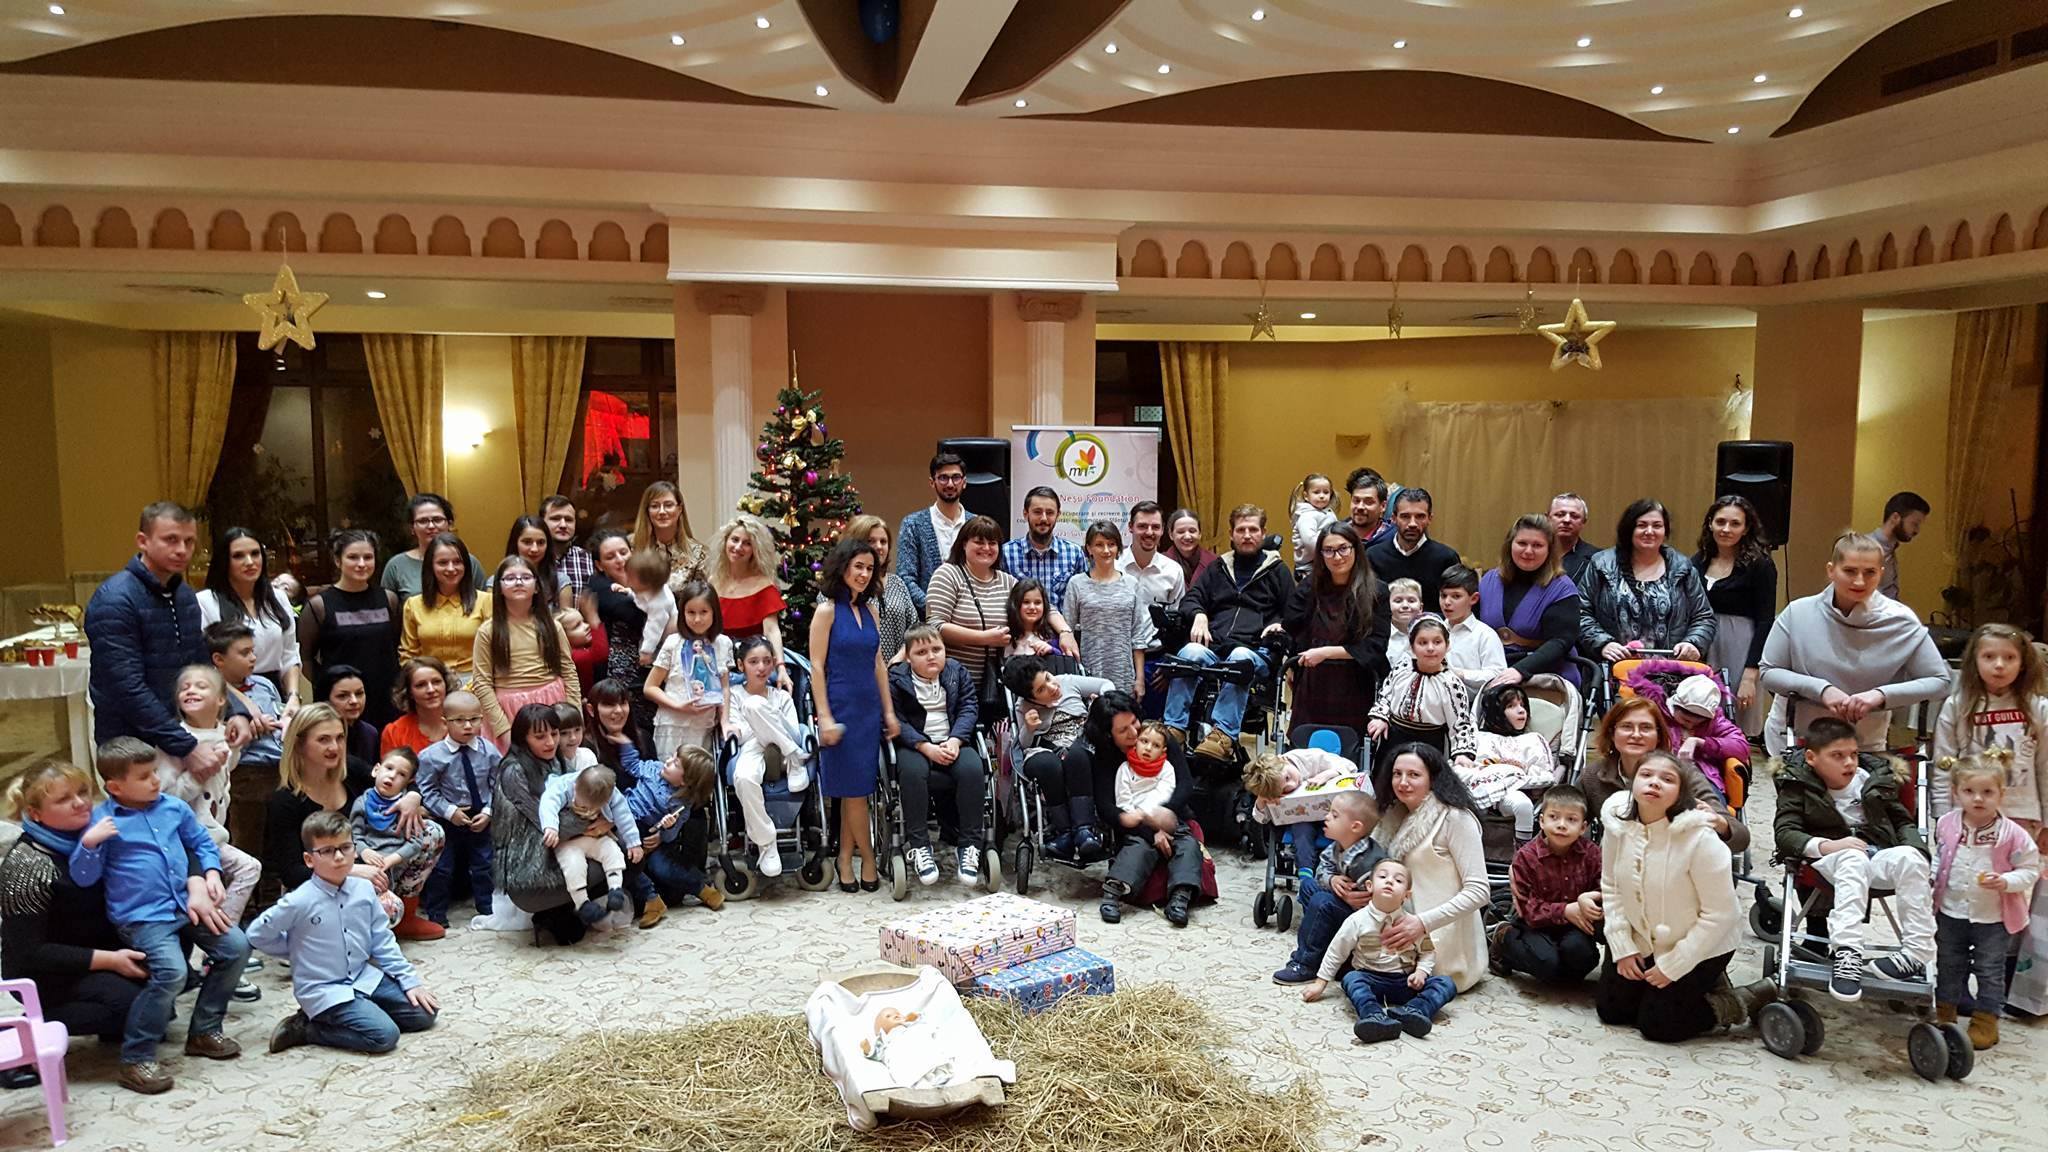 Împreună cu echipa de la fundaţia care îi poartă numele, Neşu a organizat o adevărată sărbătoare pentru zeci de copii care nici nu visau să aibă un Crăciun atât de frumos!